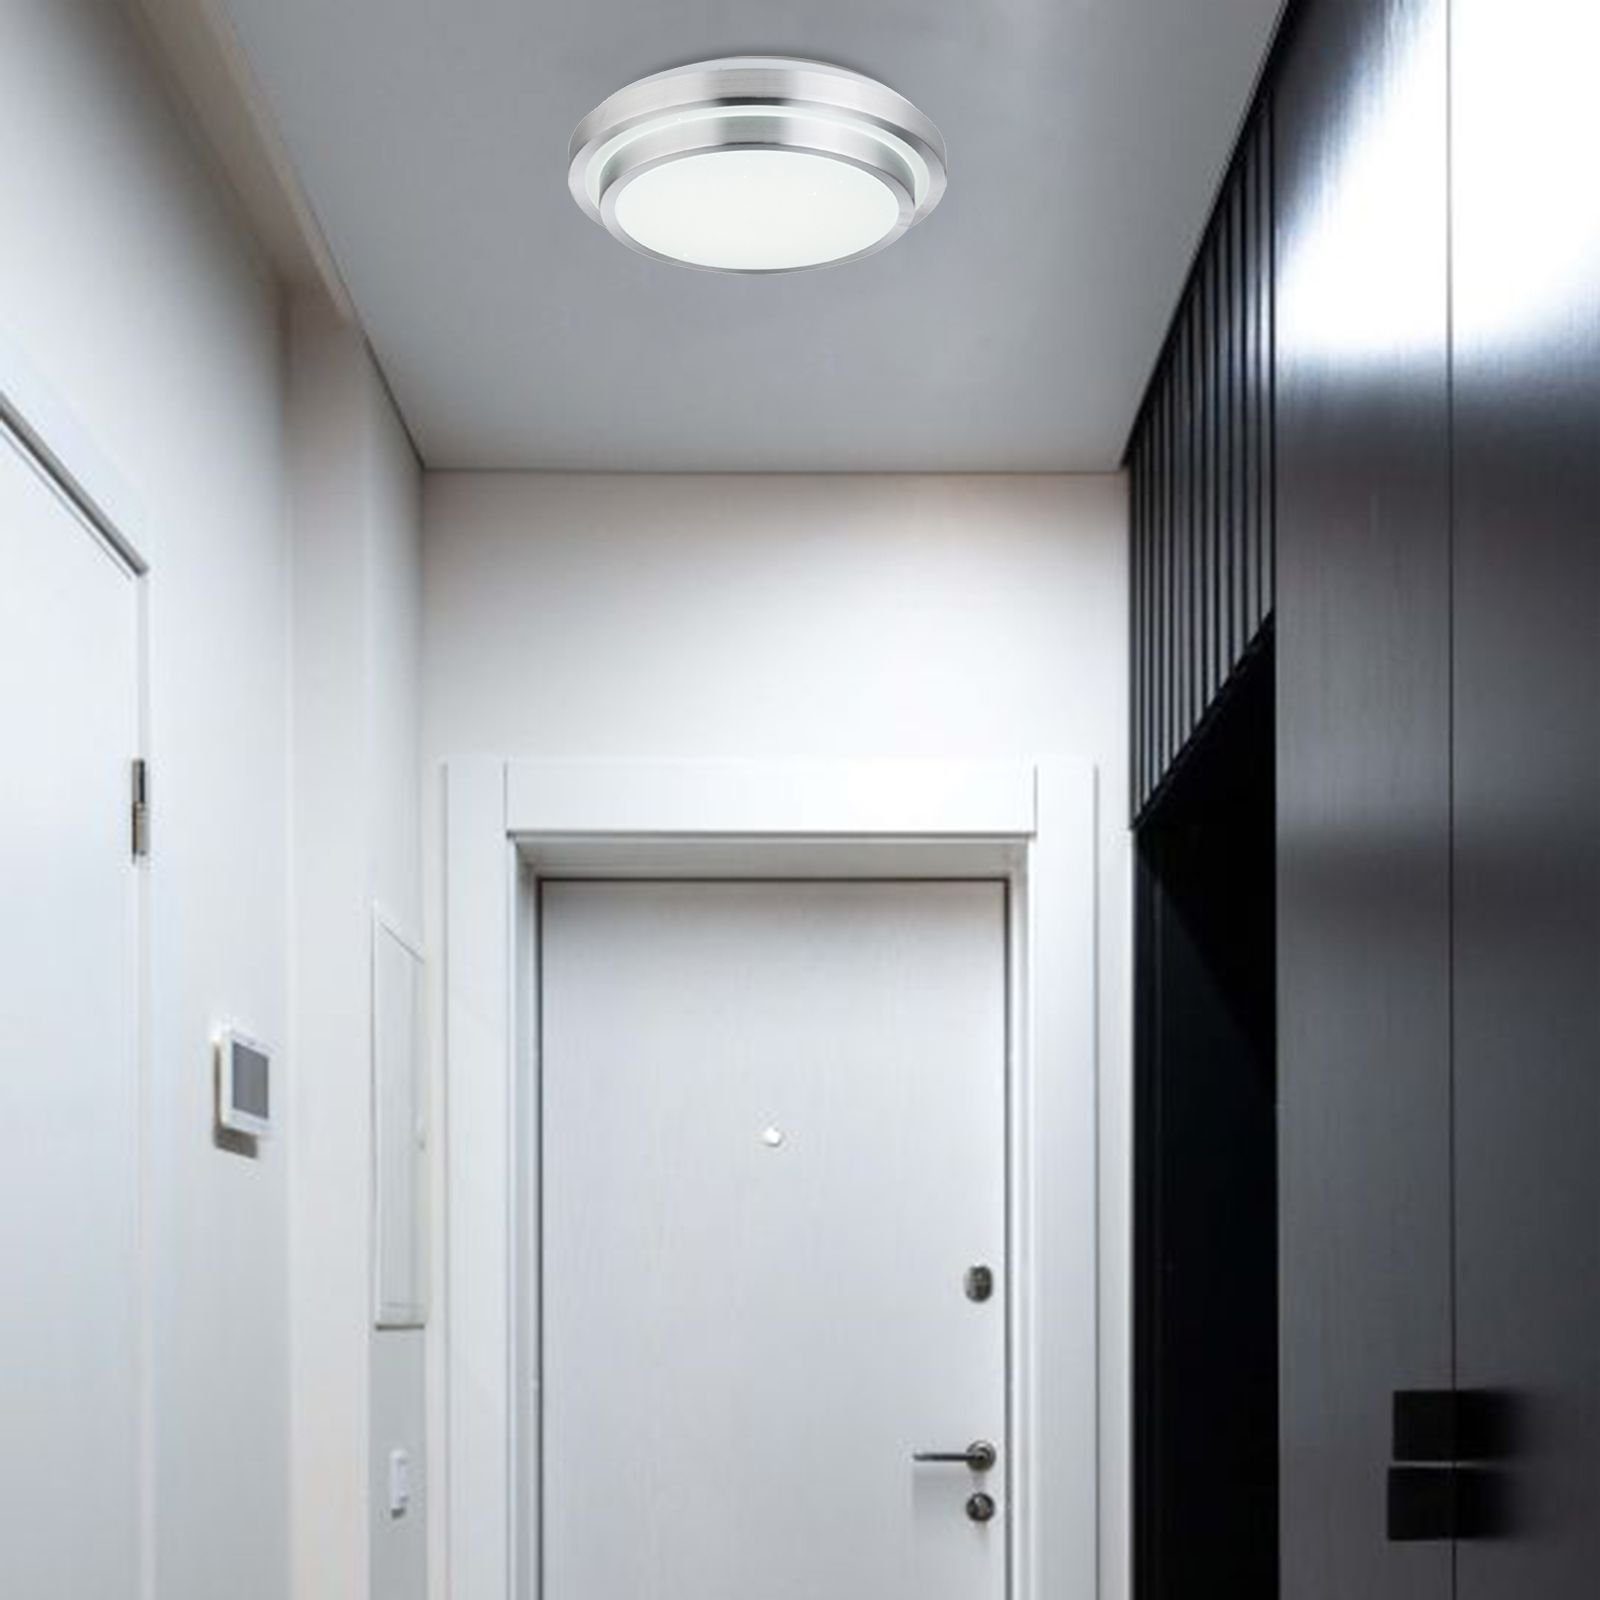 Deckenleuchte Globo Deckenlampe Wohnzimmer Fernbedienung LED GLOBO dimmbar Deckenleuchte